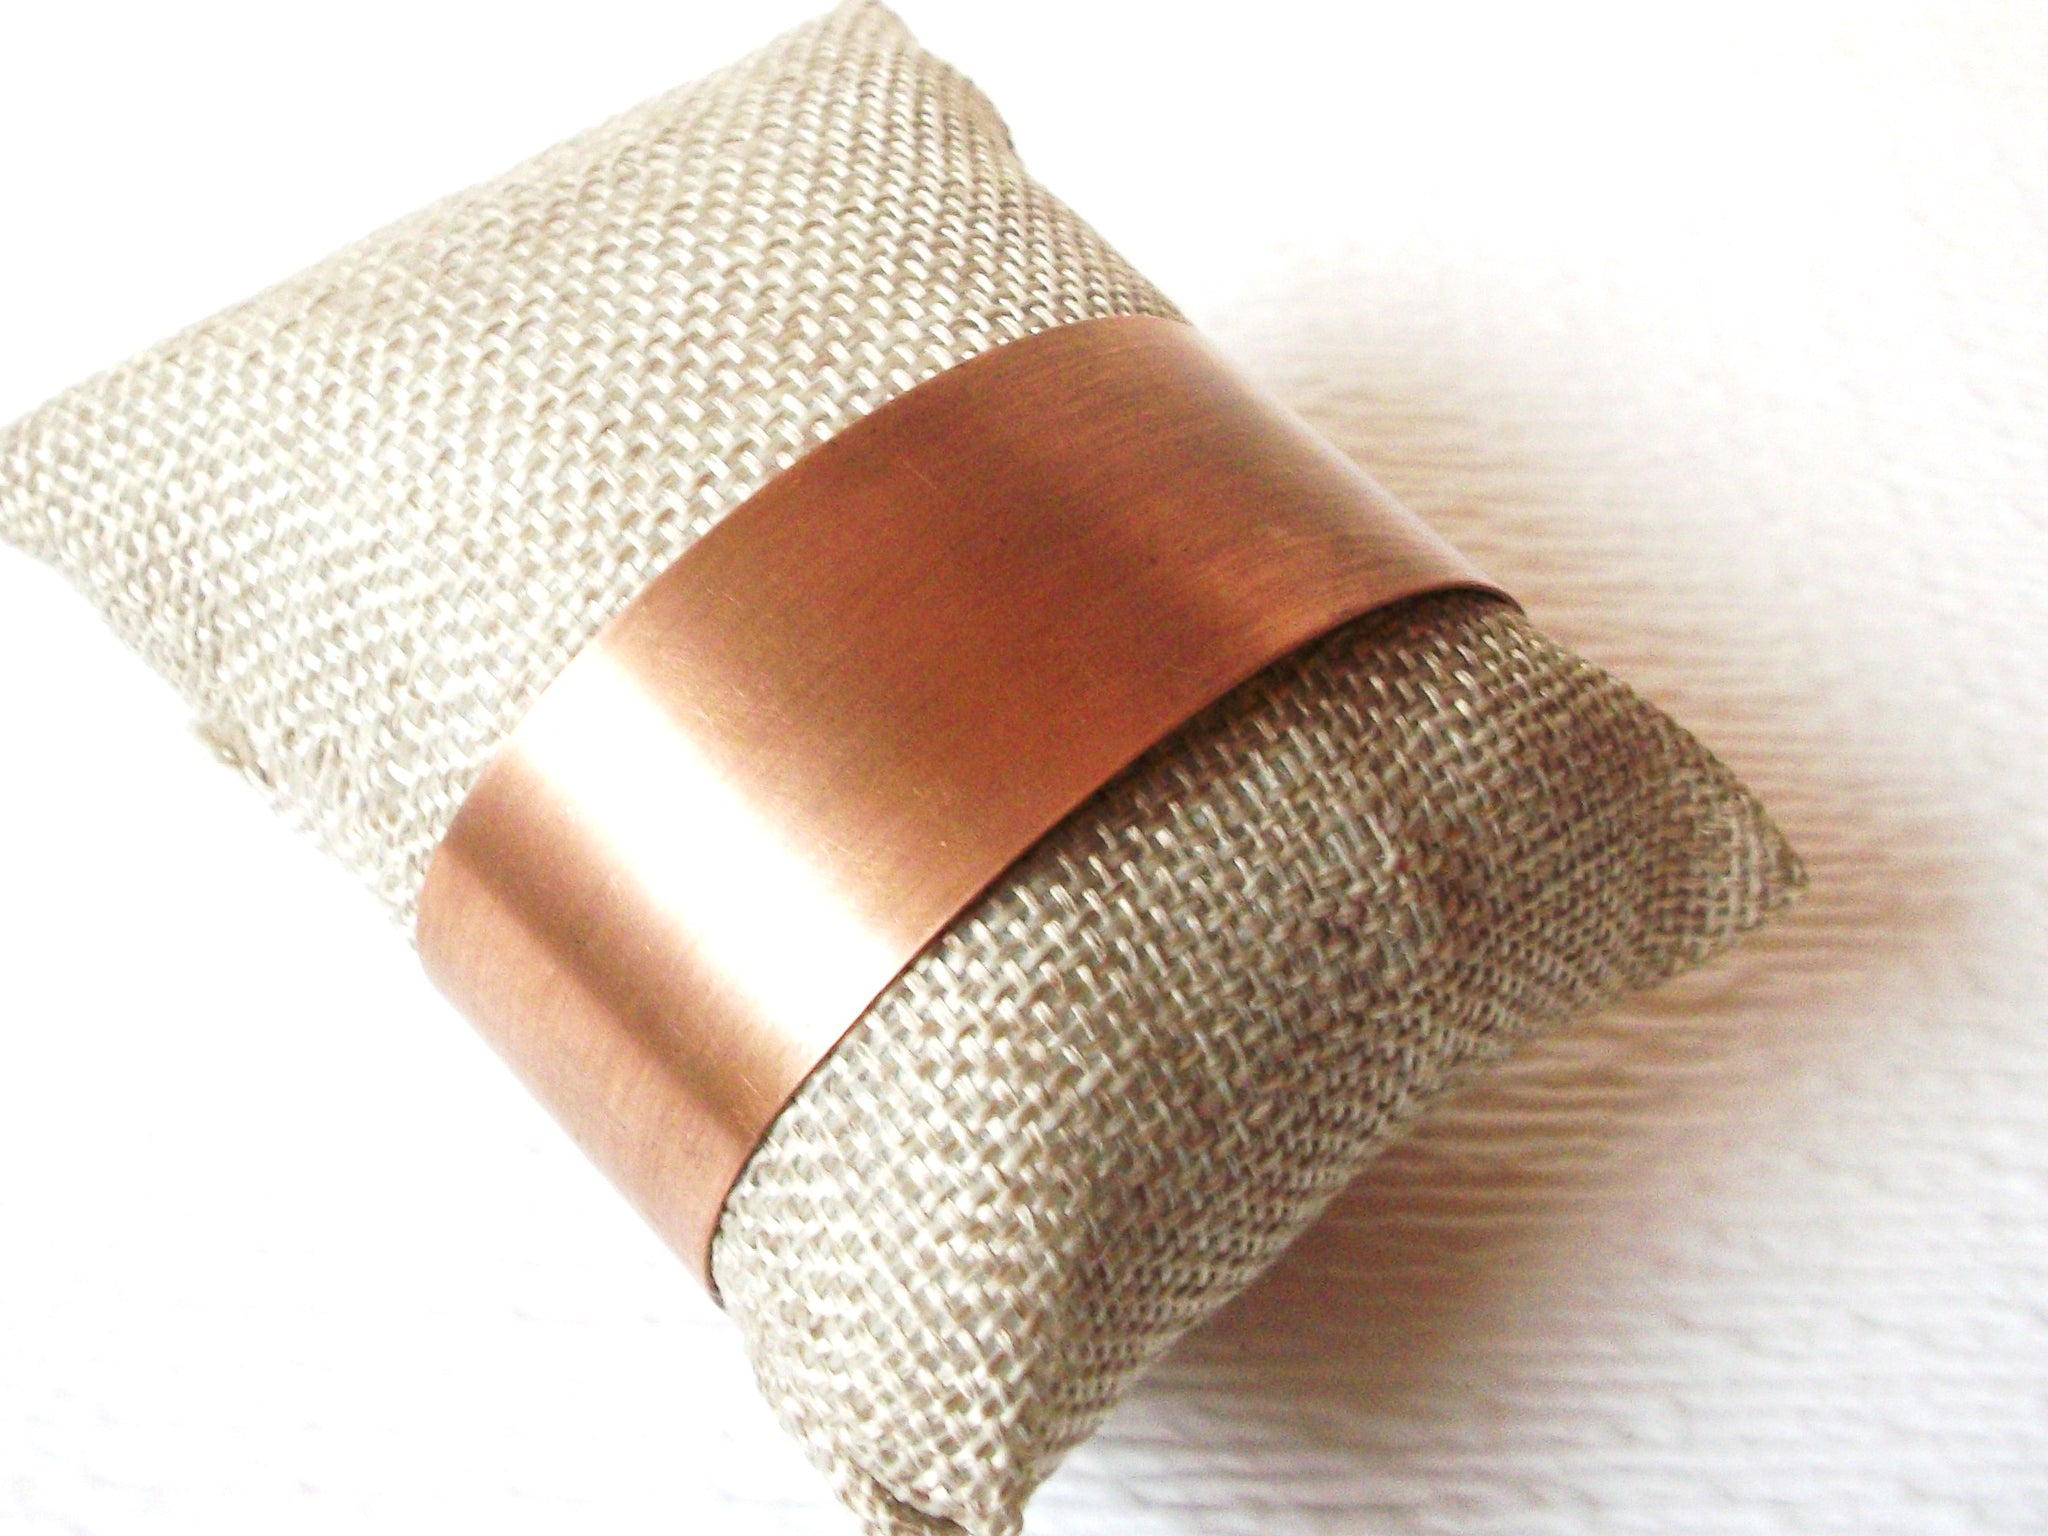 Genuine Copper Cuff Bracelet 110420